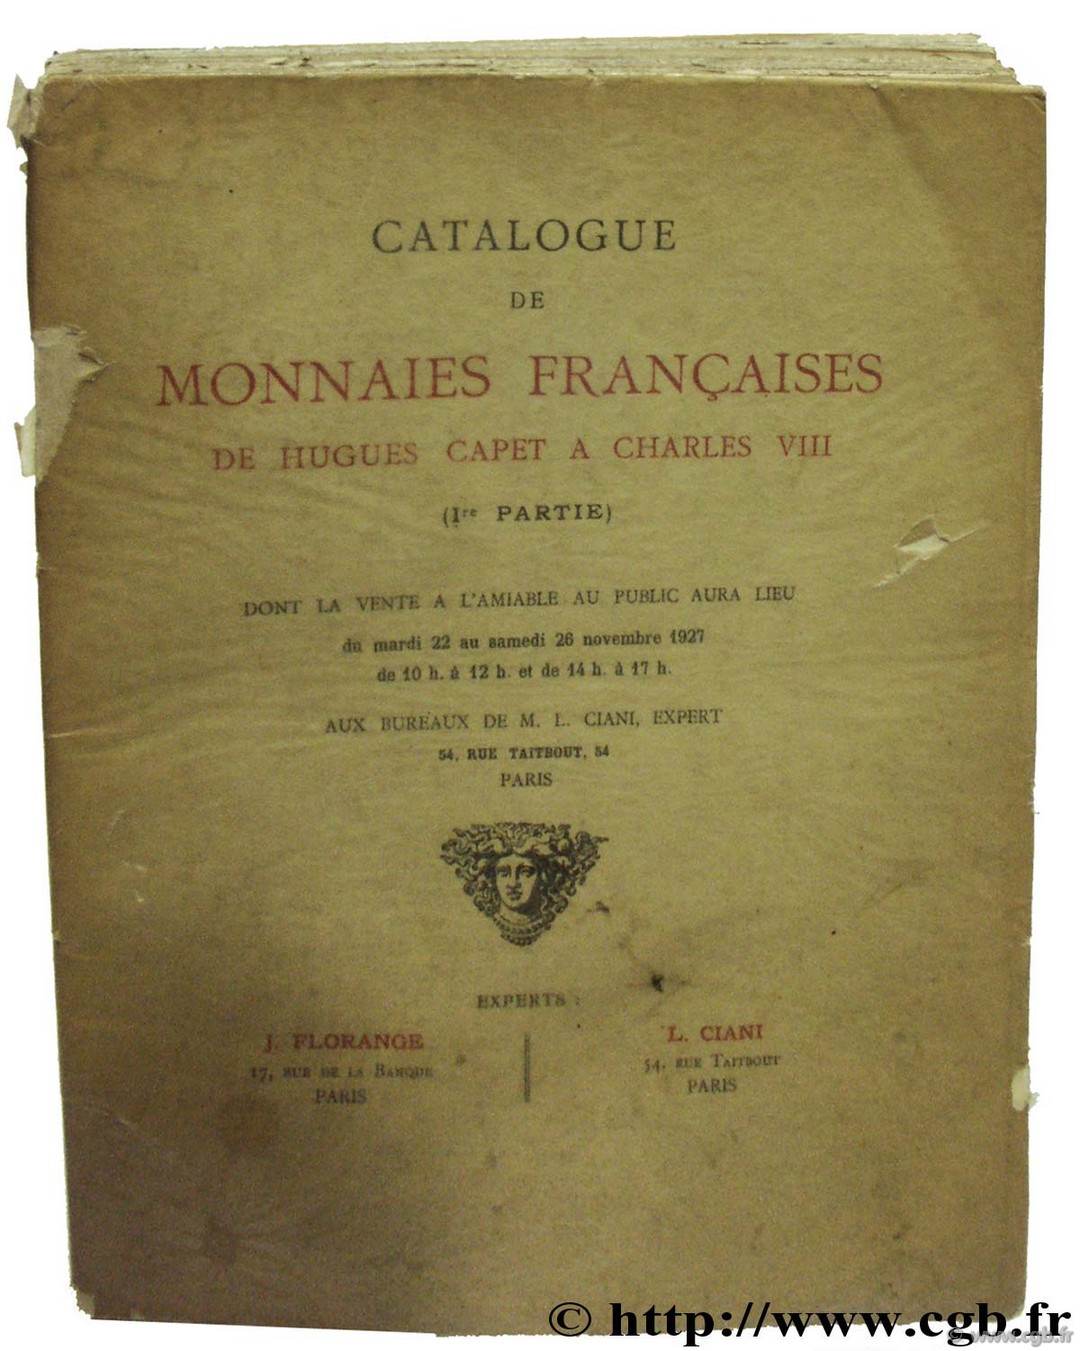 Catalogue de monnaies françaises de Hugues Capet à Charles VIII (collection Marchéville) Collection Marchéville FLORANGE J., CIANI L.